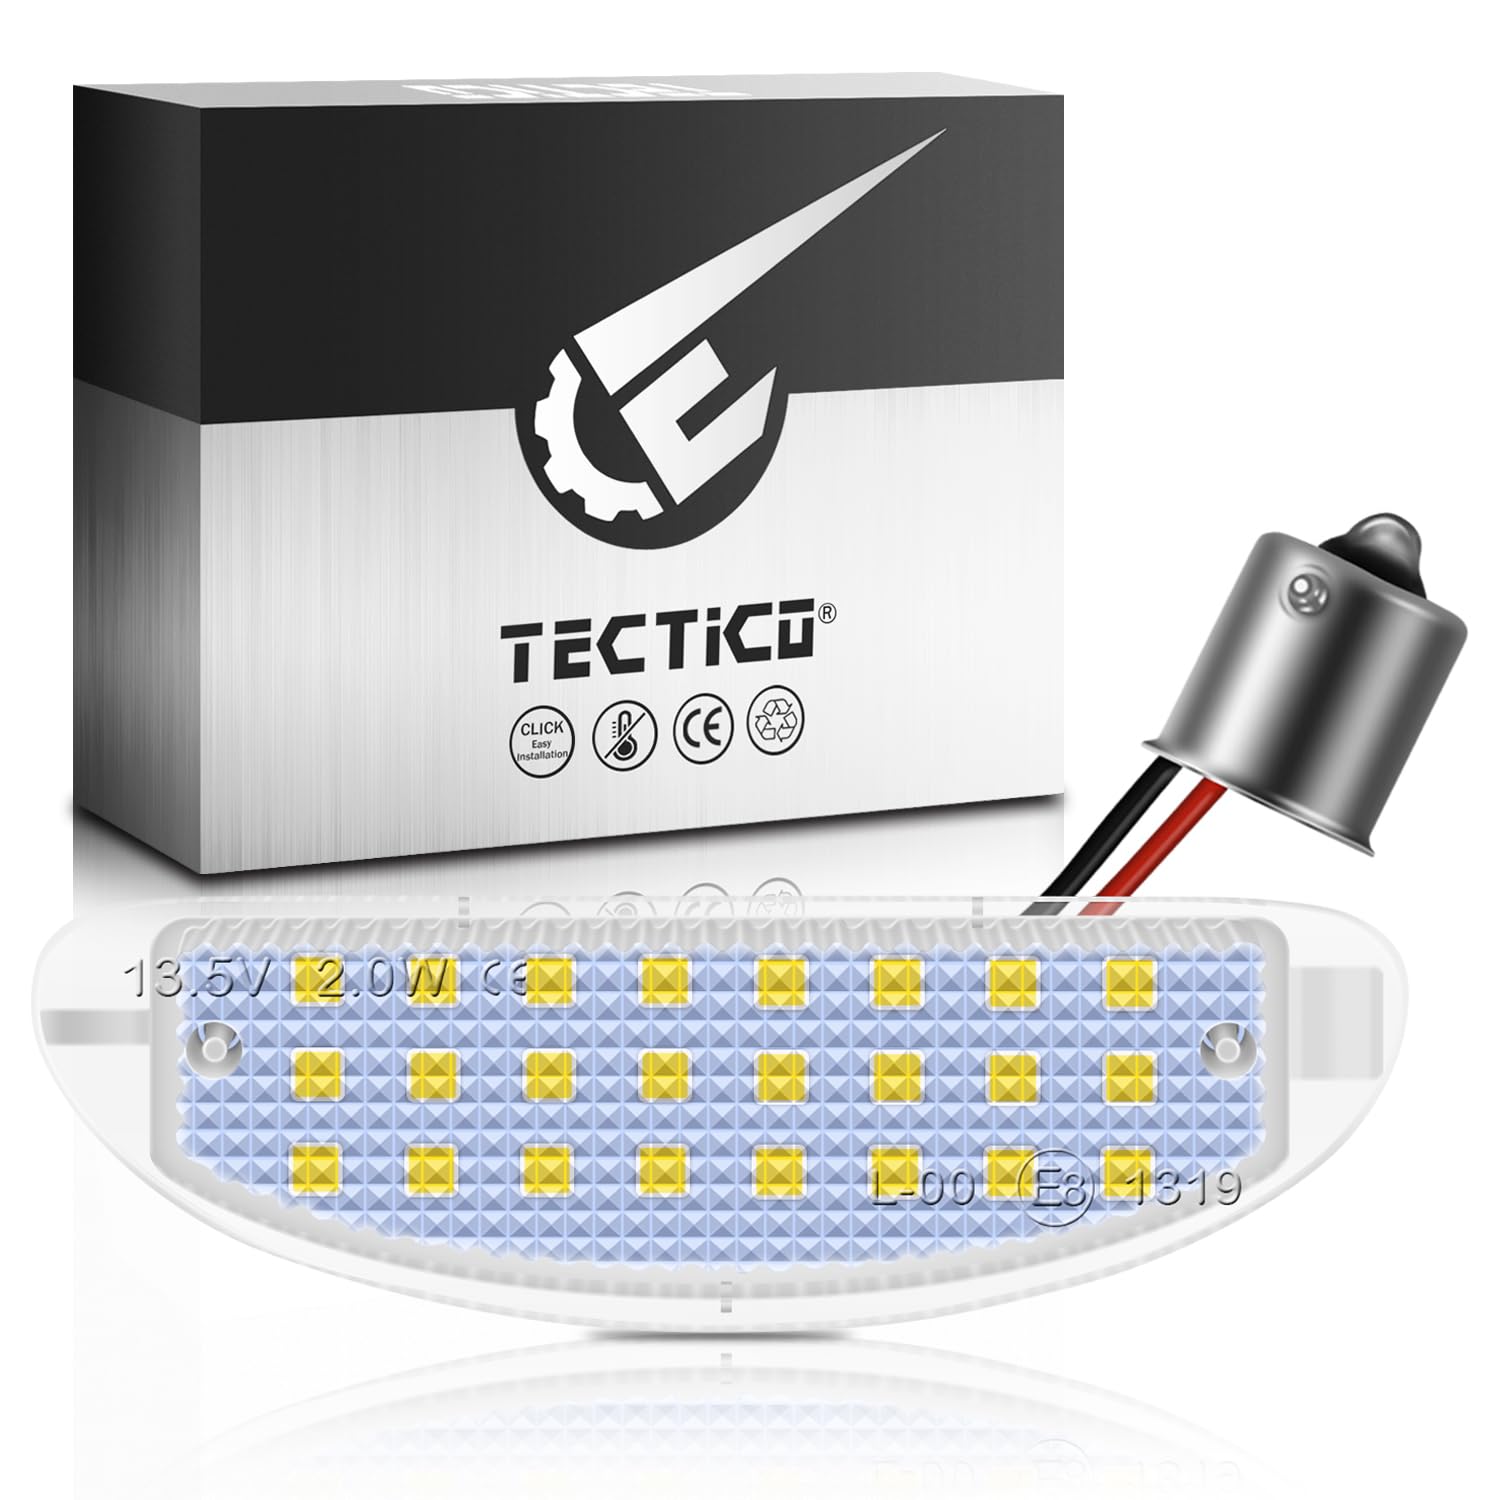 TECTICO LED Kennzeichenbeleuchtung Nummernschildbeleuchtung SMD Ultra Weiß Kompatibel mit Renault Clio MK2 Twingo, 1 Lampe von TECTICO